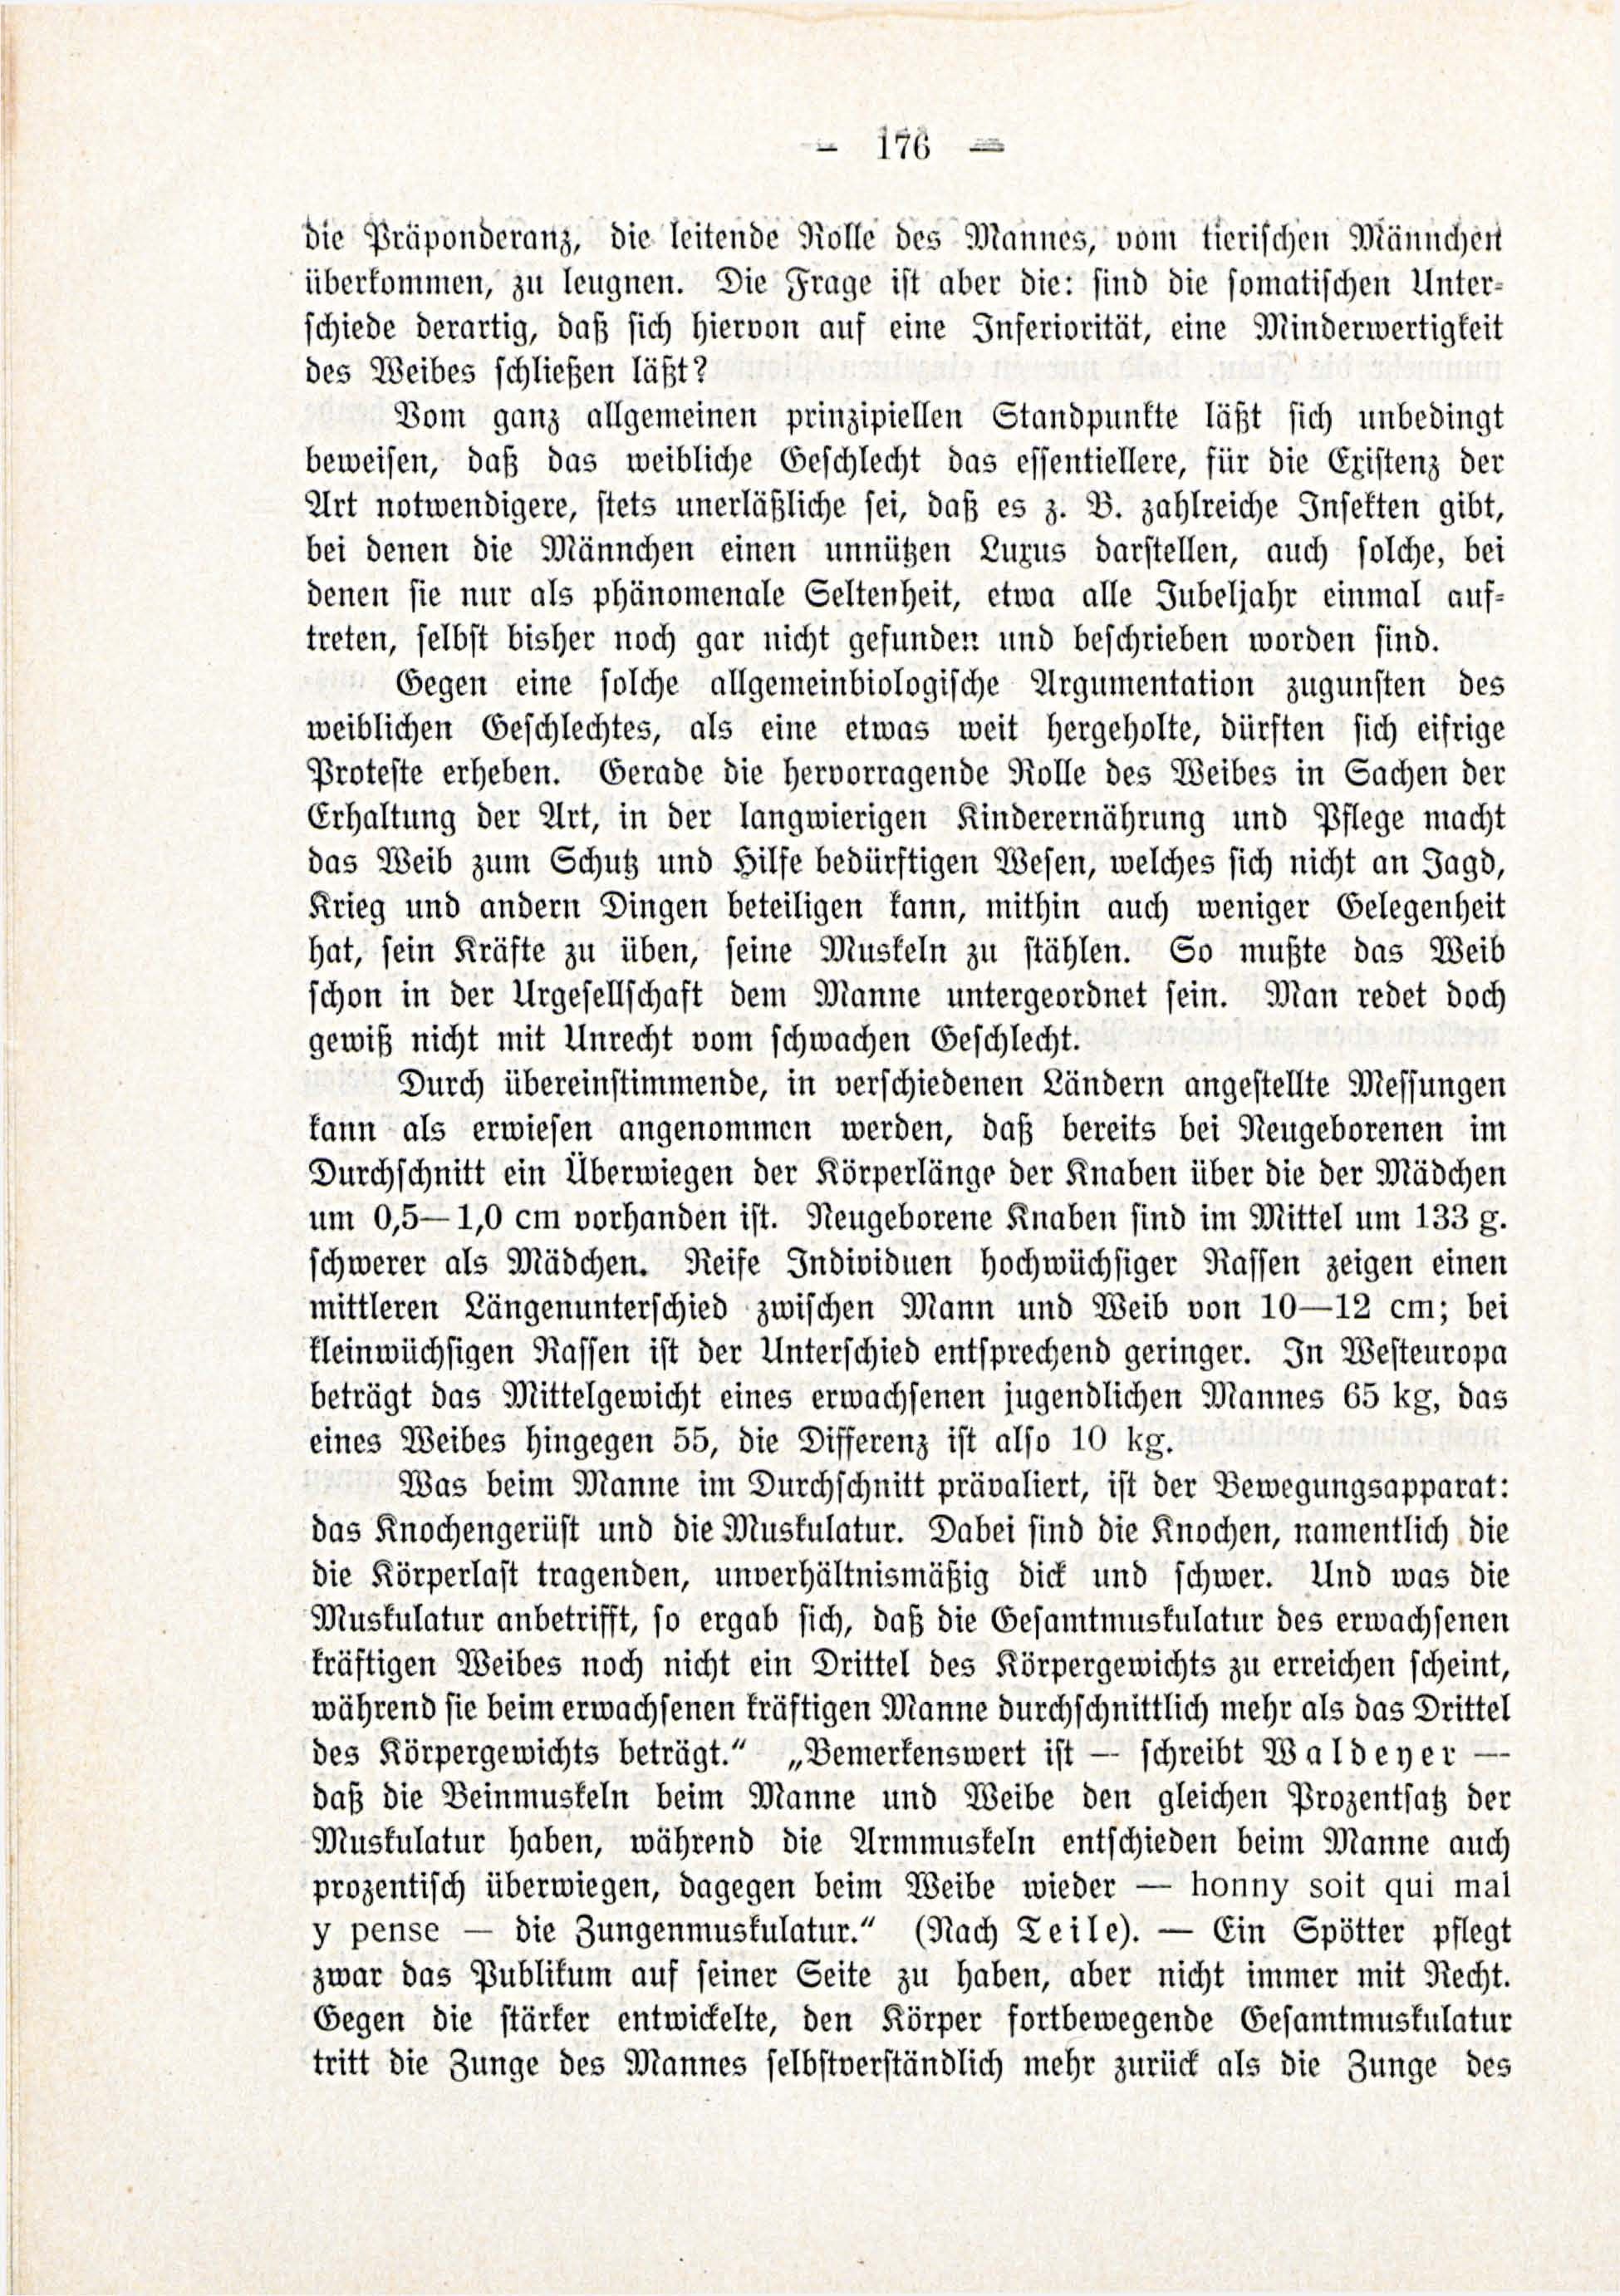 Deutsche Monatsschrift für Russland [3/03] (1914) | 22. (176) Main body of text